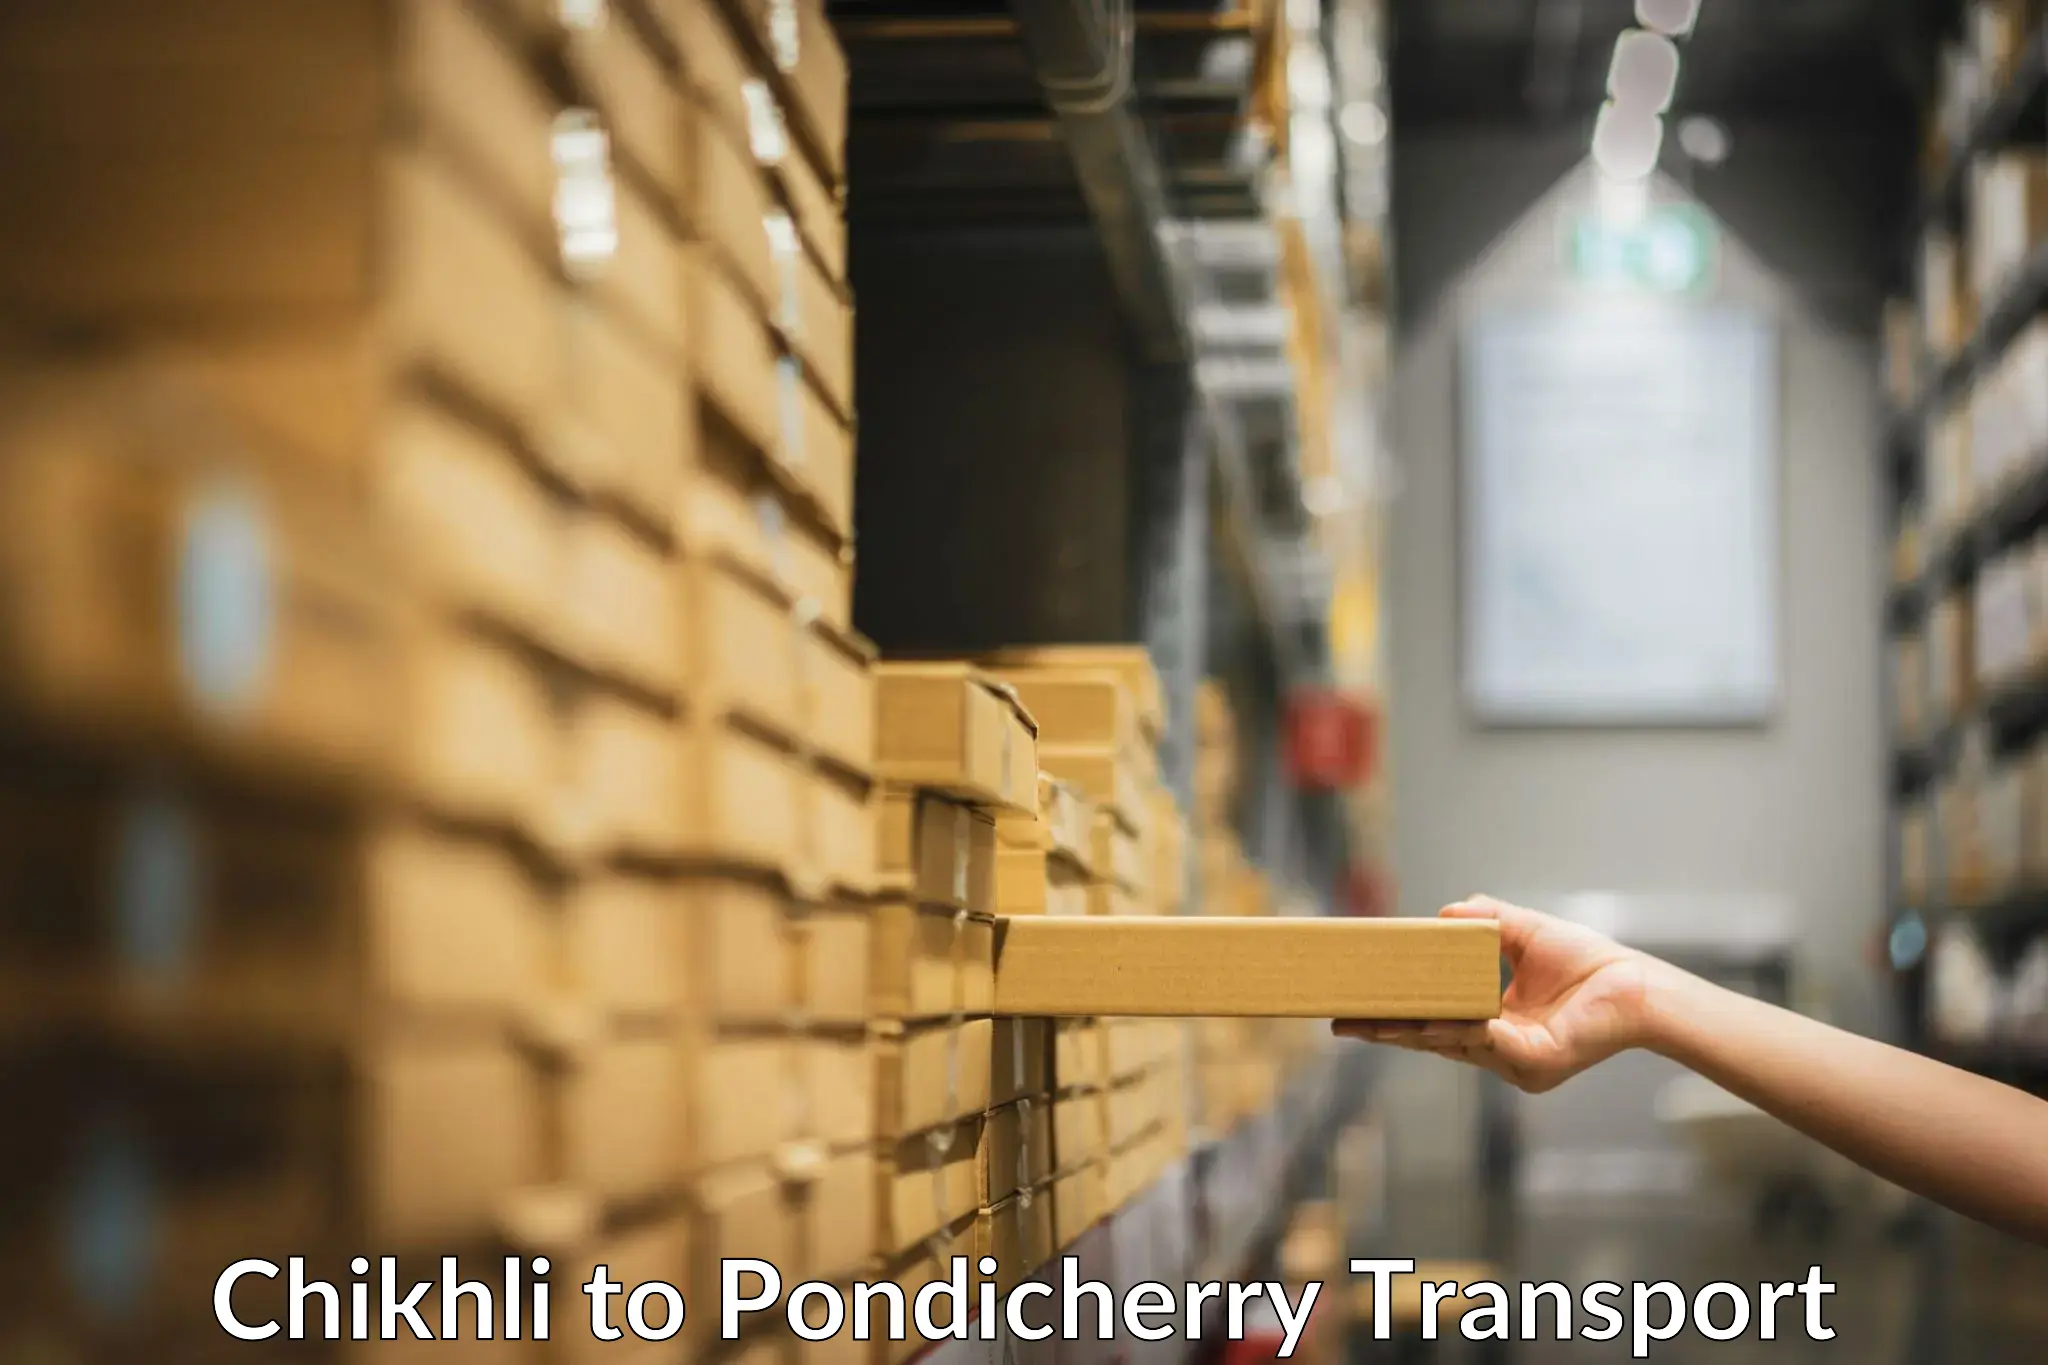 Parcel transport services Chikhli to Pondicherry University